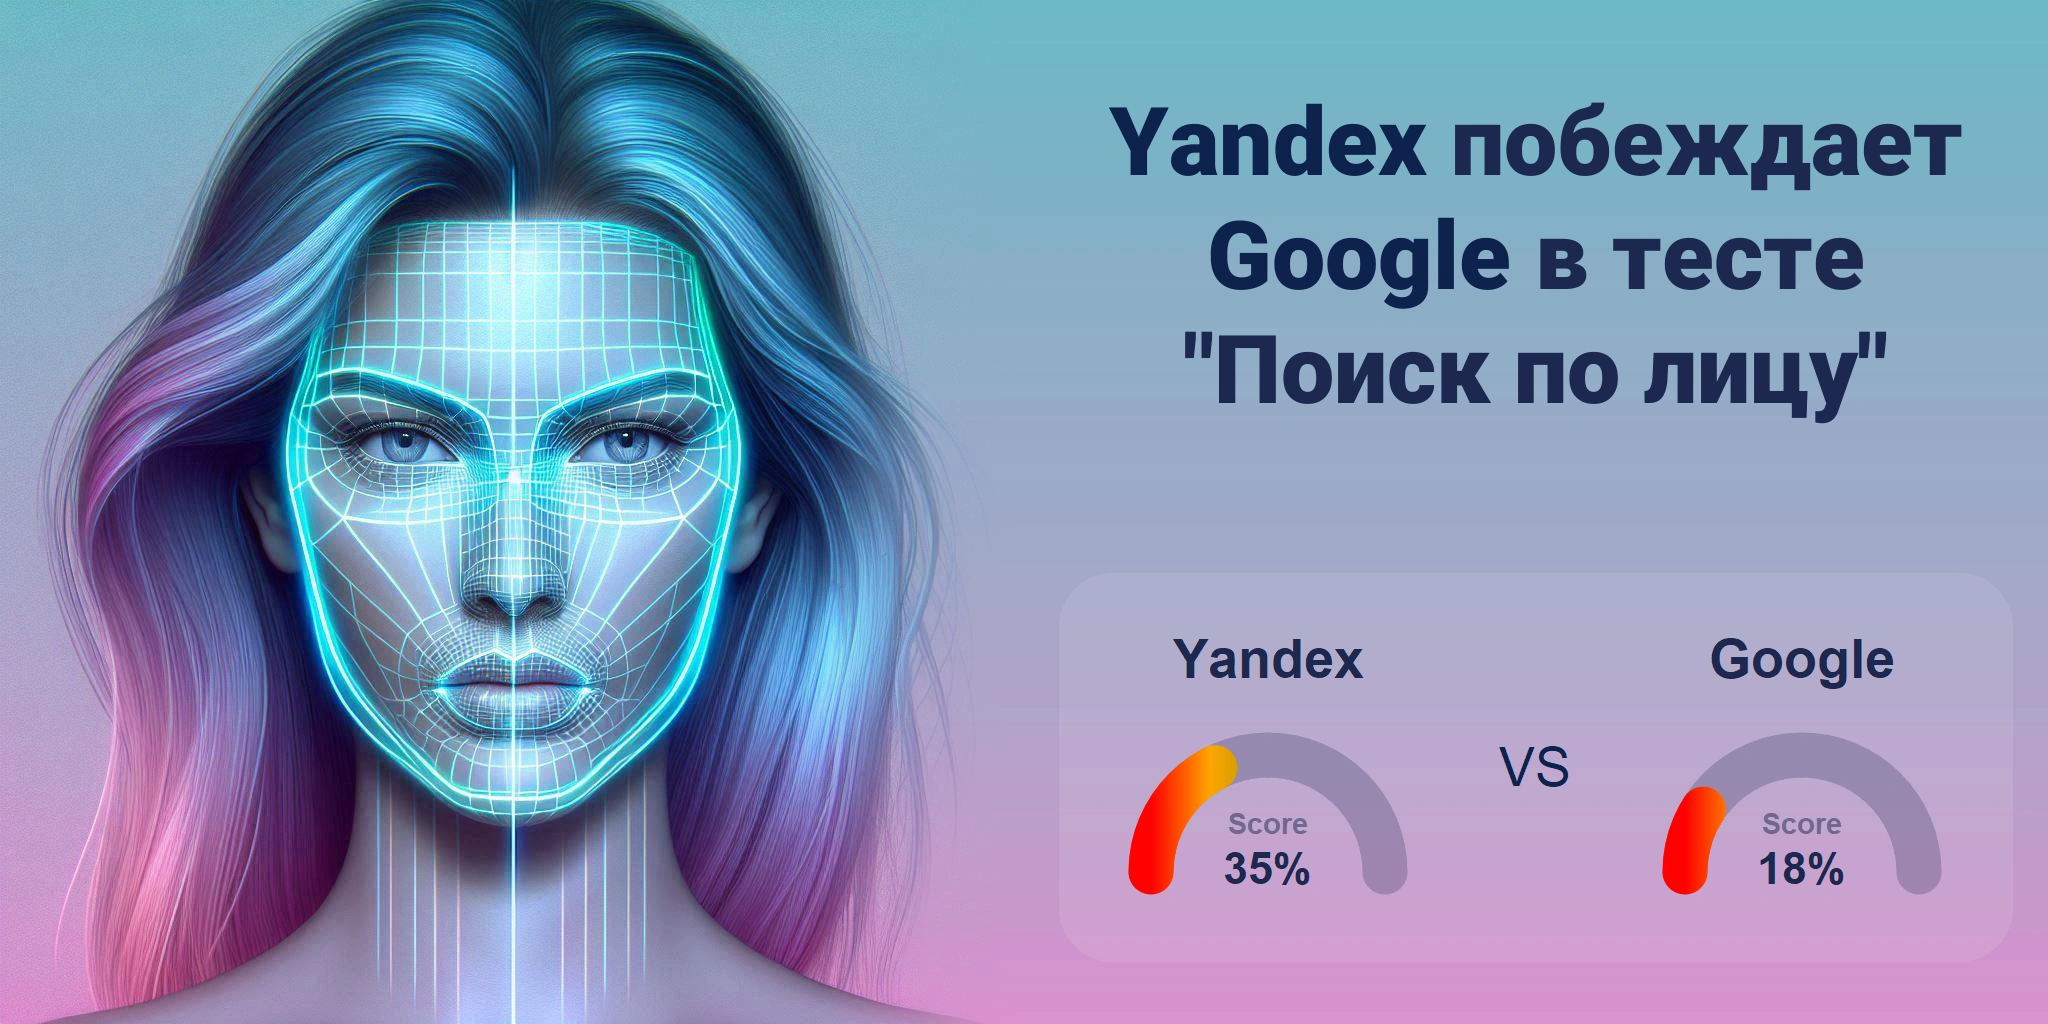 Что лучше для поиска по лицам: <br>Google или Yandex?